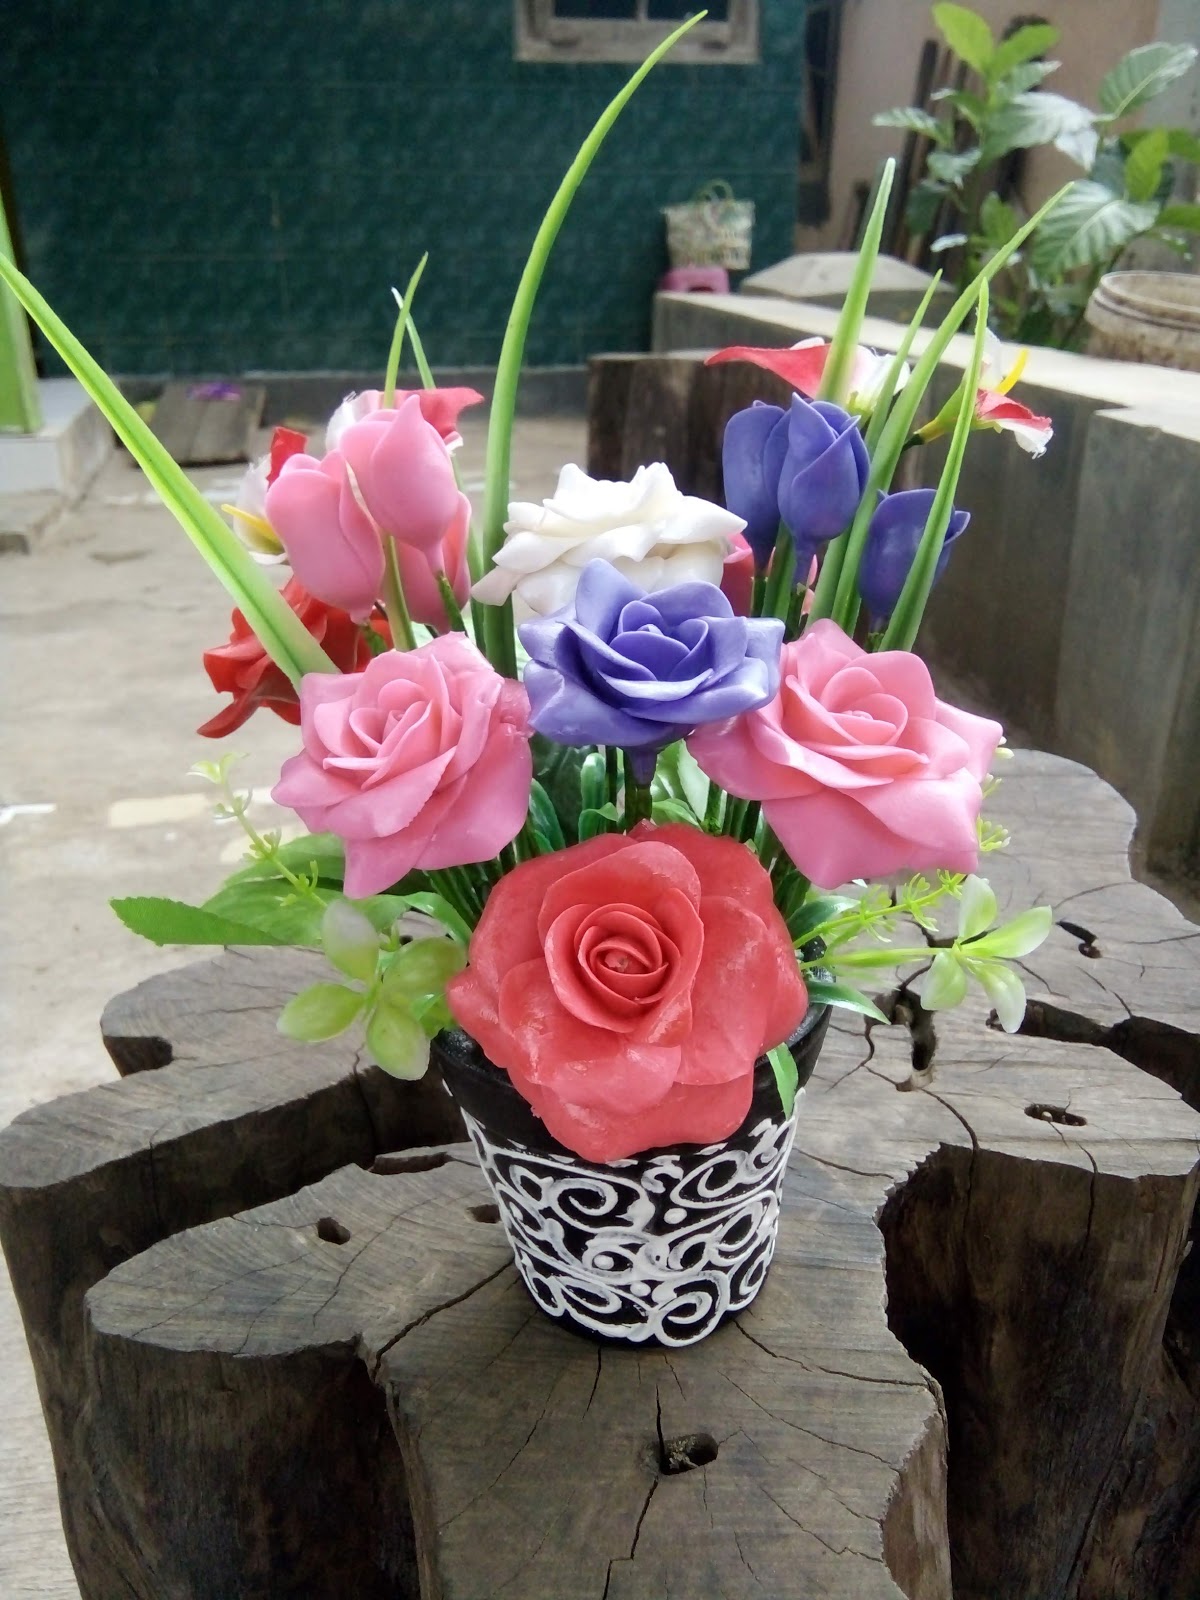 Rangkuman Contoh Gambar Bunga Yang Terbuat Dari Sabun yang ...